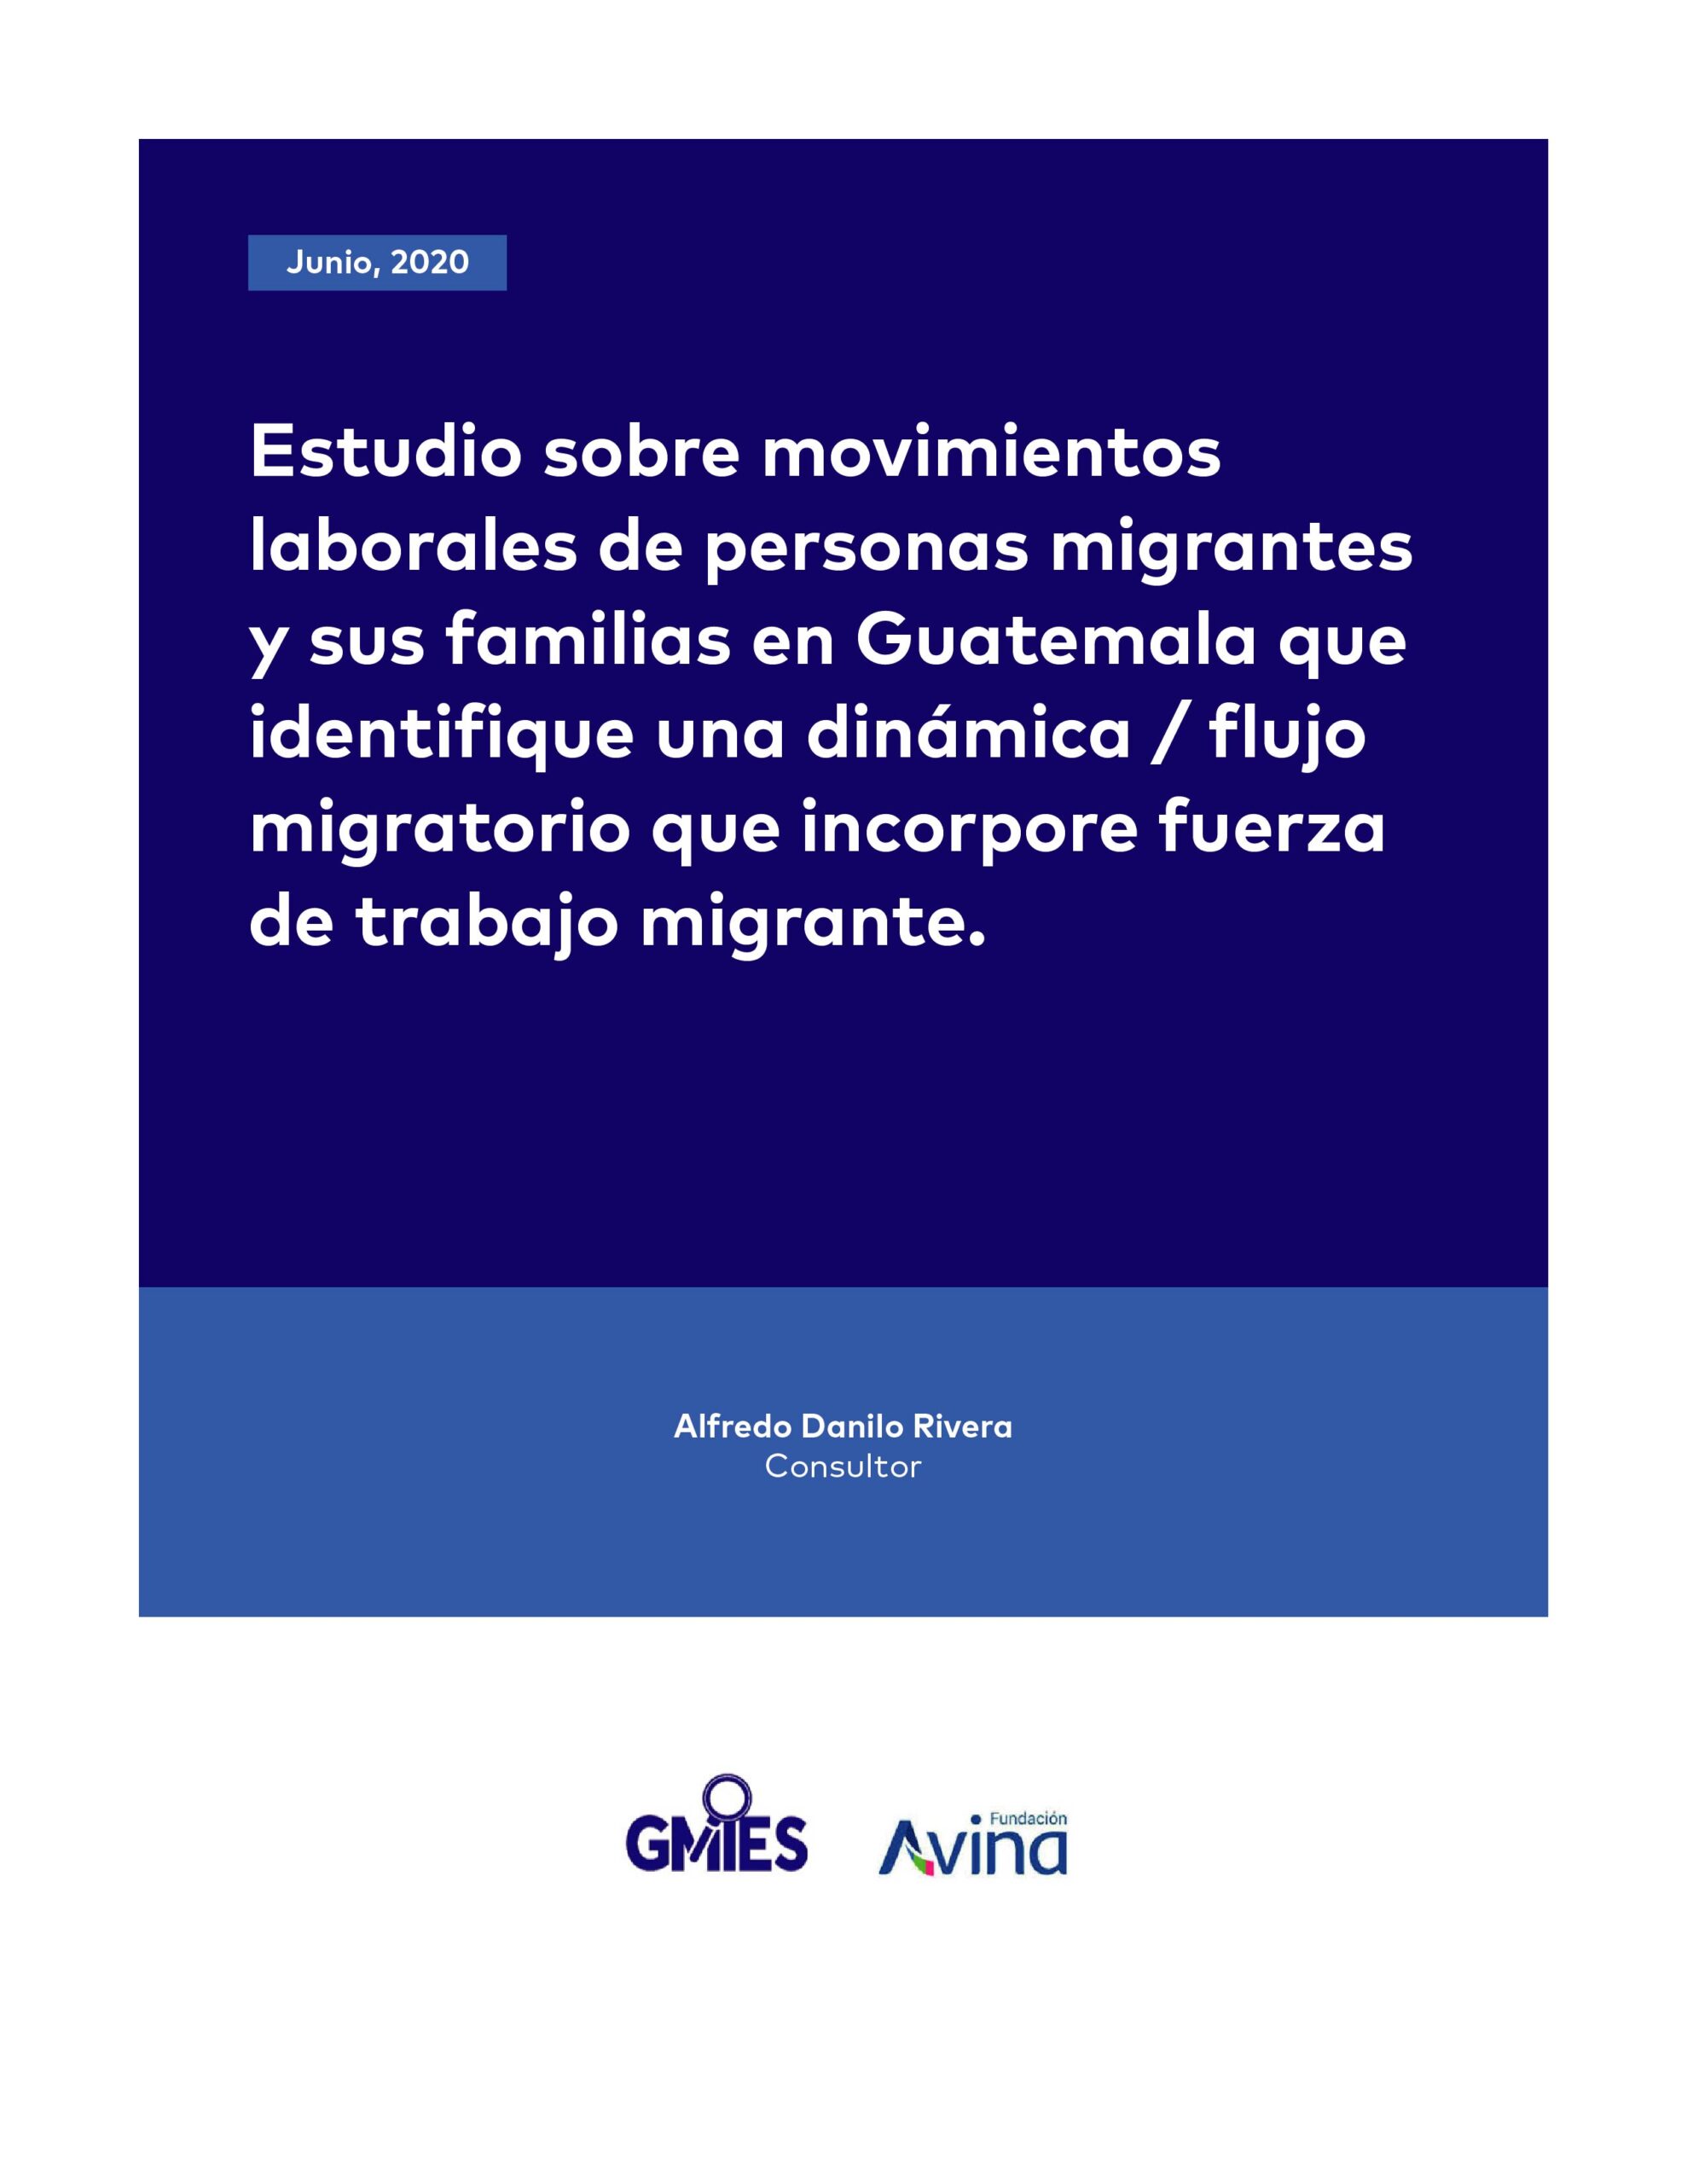 Estudio sobre movimientos laborales de personas migrantes y sus familias en Guatemala que identifique una dinámica/flujo migratorio que incorpore fuerza de trabajo migrante